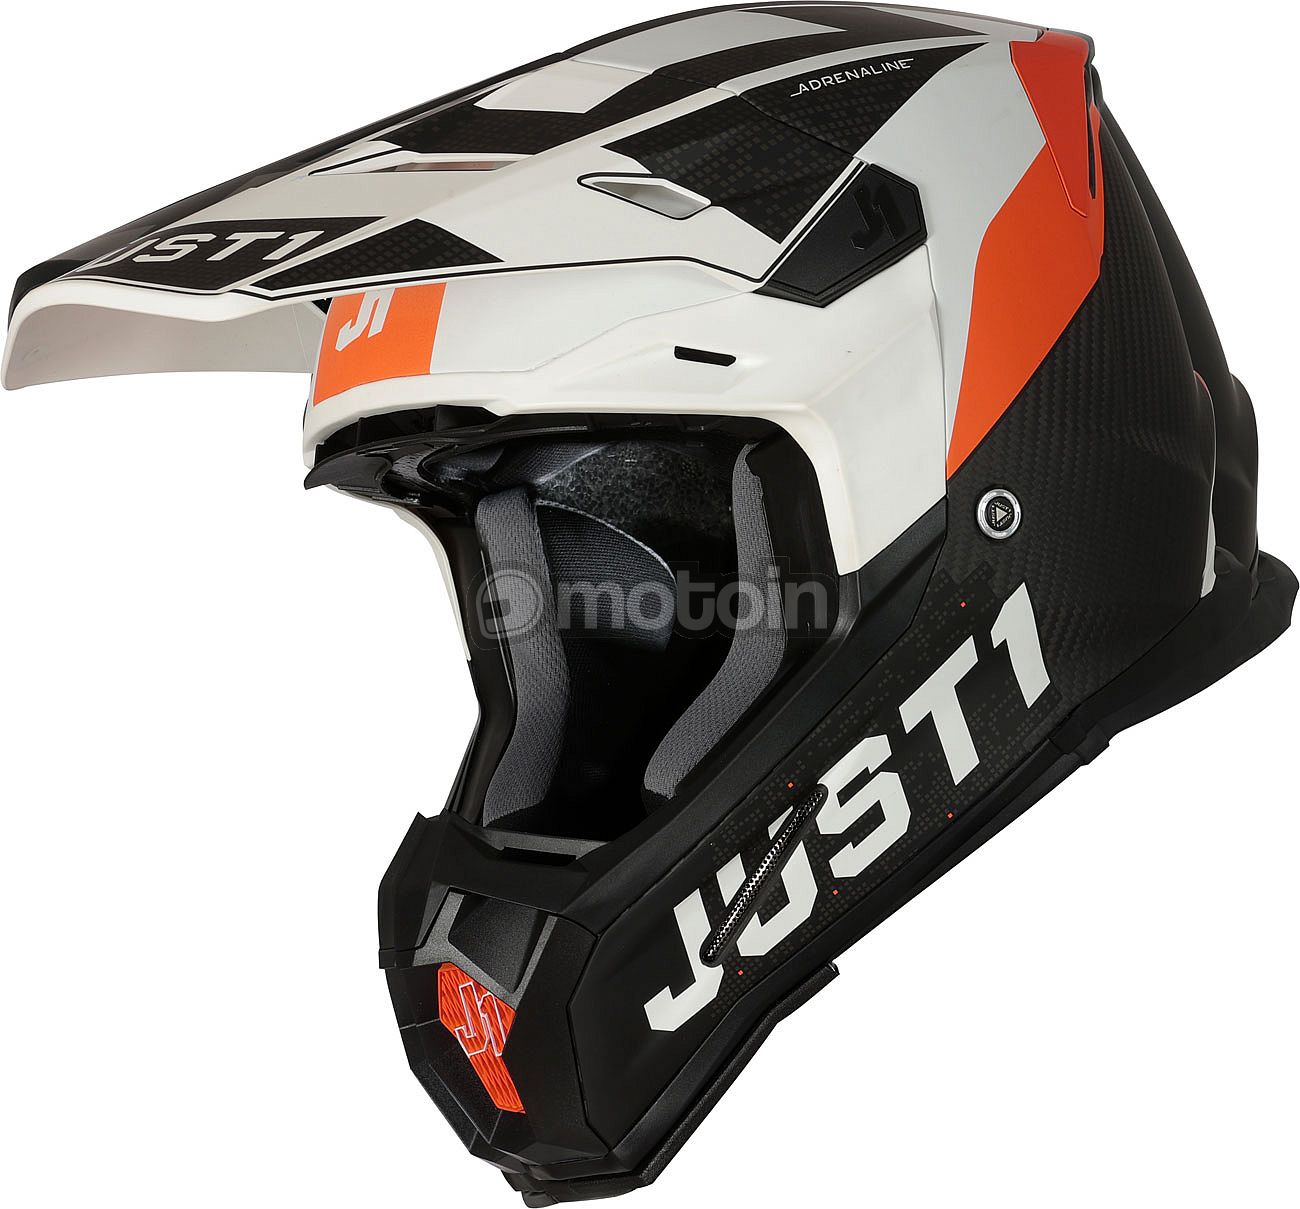 Just1 J22 Adrenaline, детский кроссовый шлем